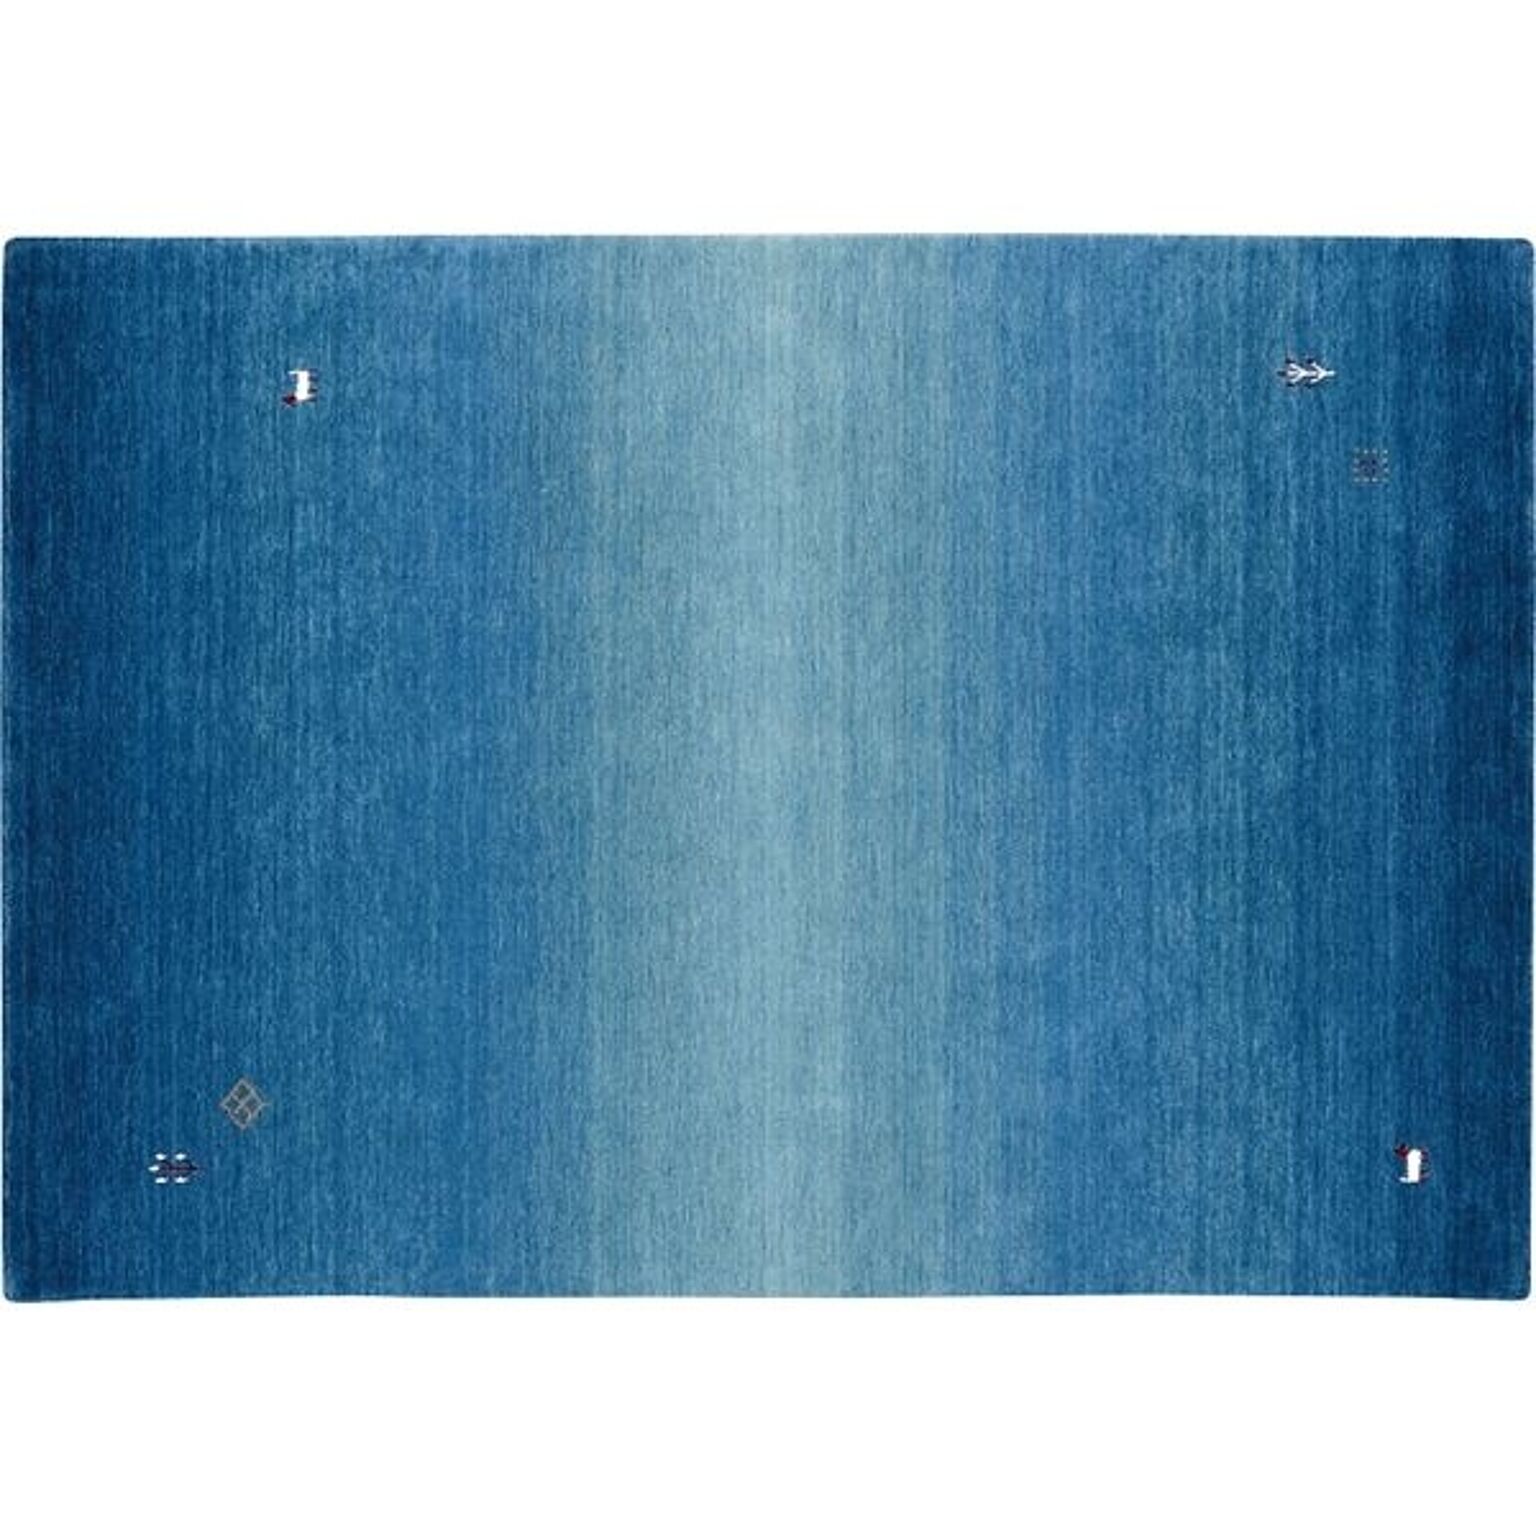 防炎 ラグマット/絨毯 【約70×120cm ブルー】 ホットカーペット対応 『クレアギャベ』 プレーベル【代引不可】